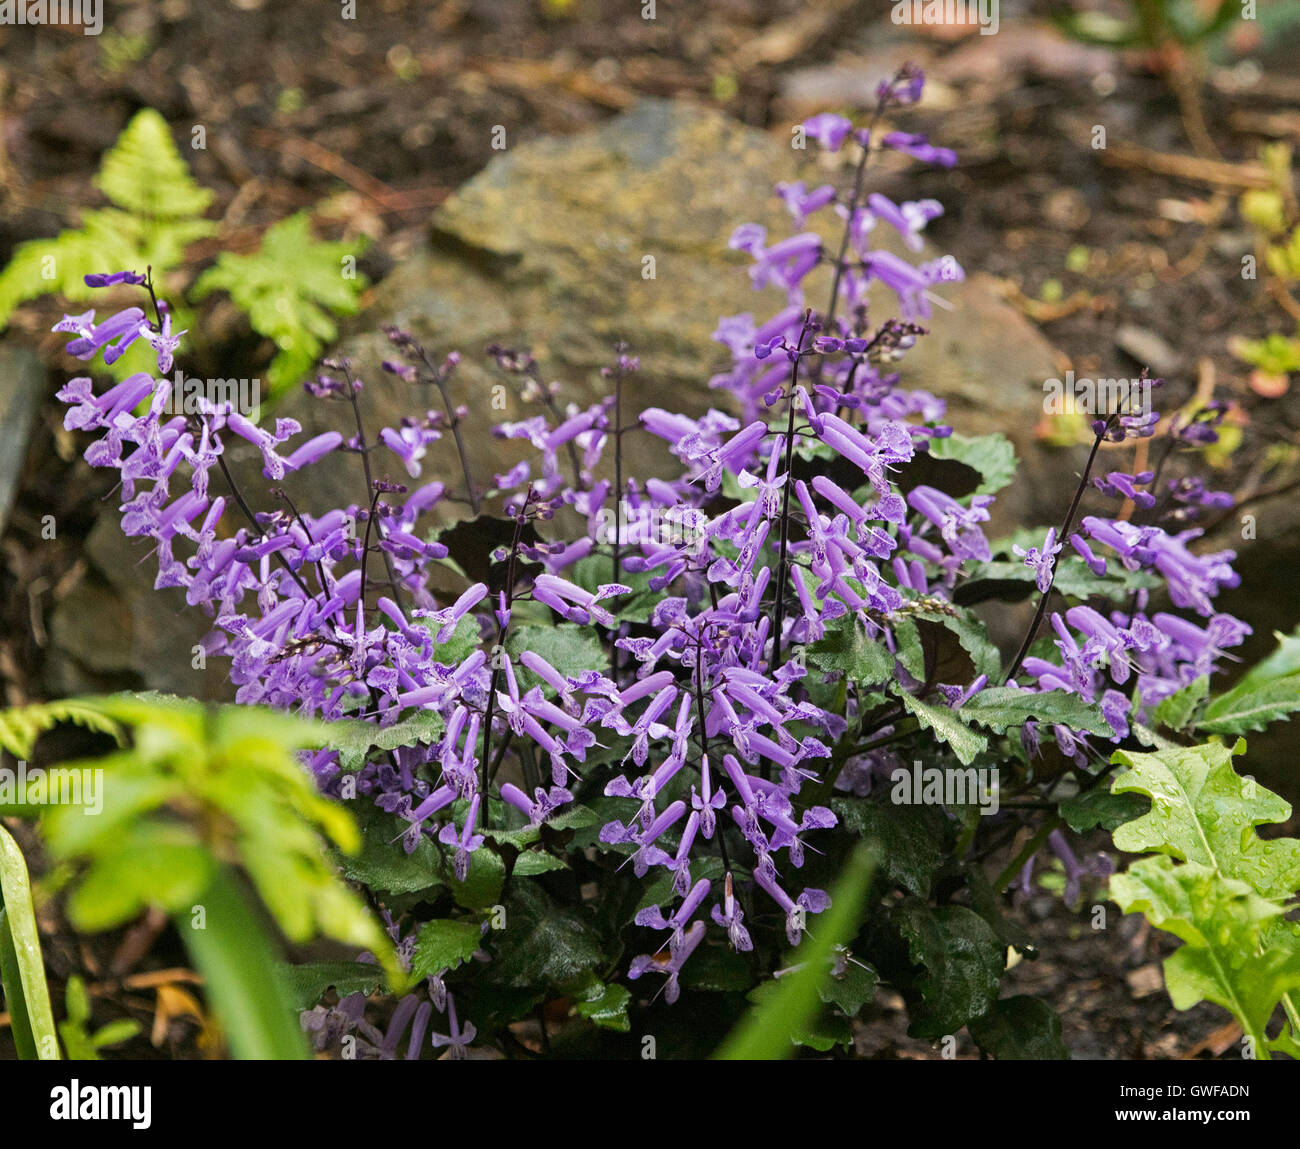 Cluster von Ähren mit leuchtend violetten Blüten & dunkelgrün Blätter Garten, mehrjährige Pflanze Plectranthus Plepalila "Mona Lavendel" Stockfoto